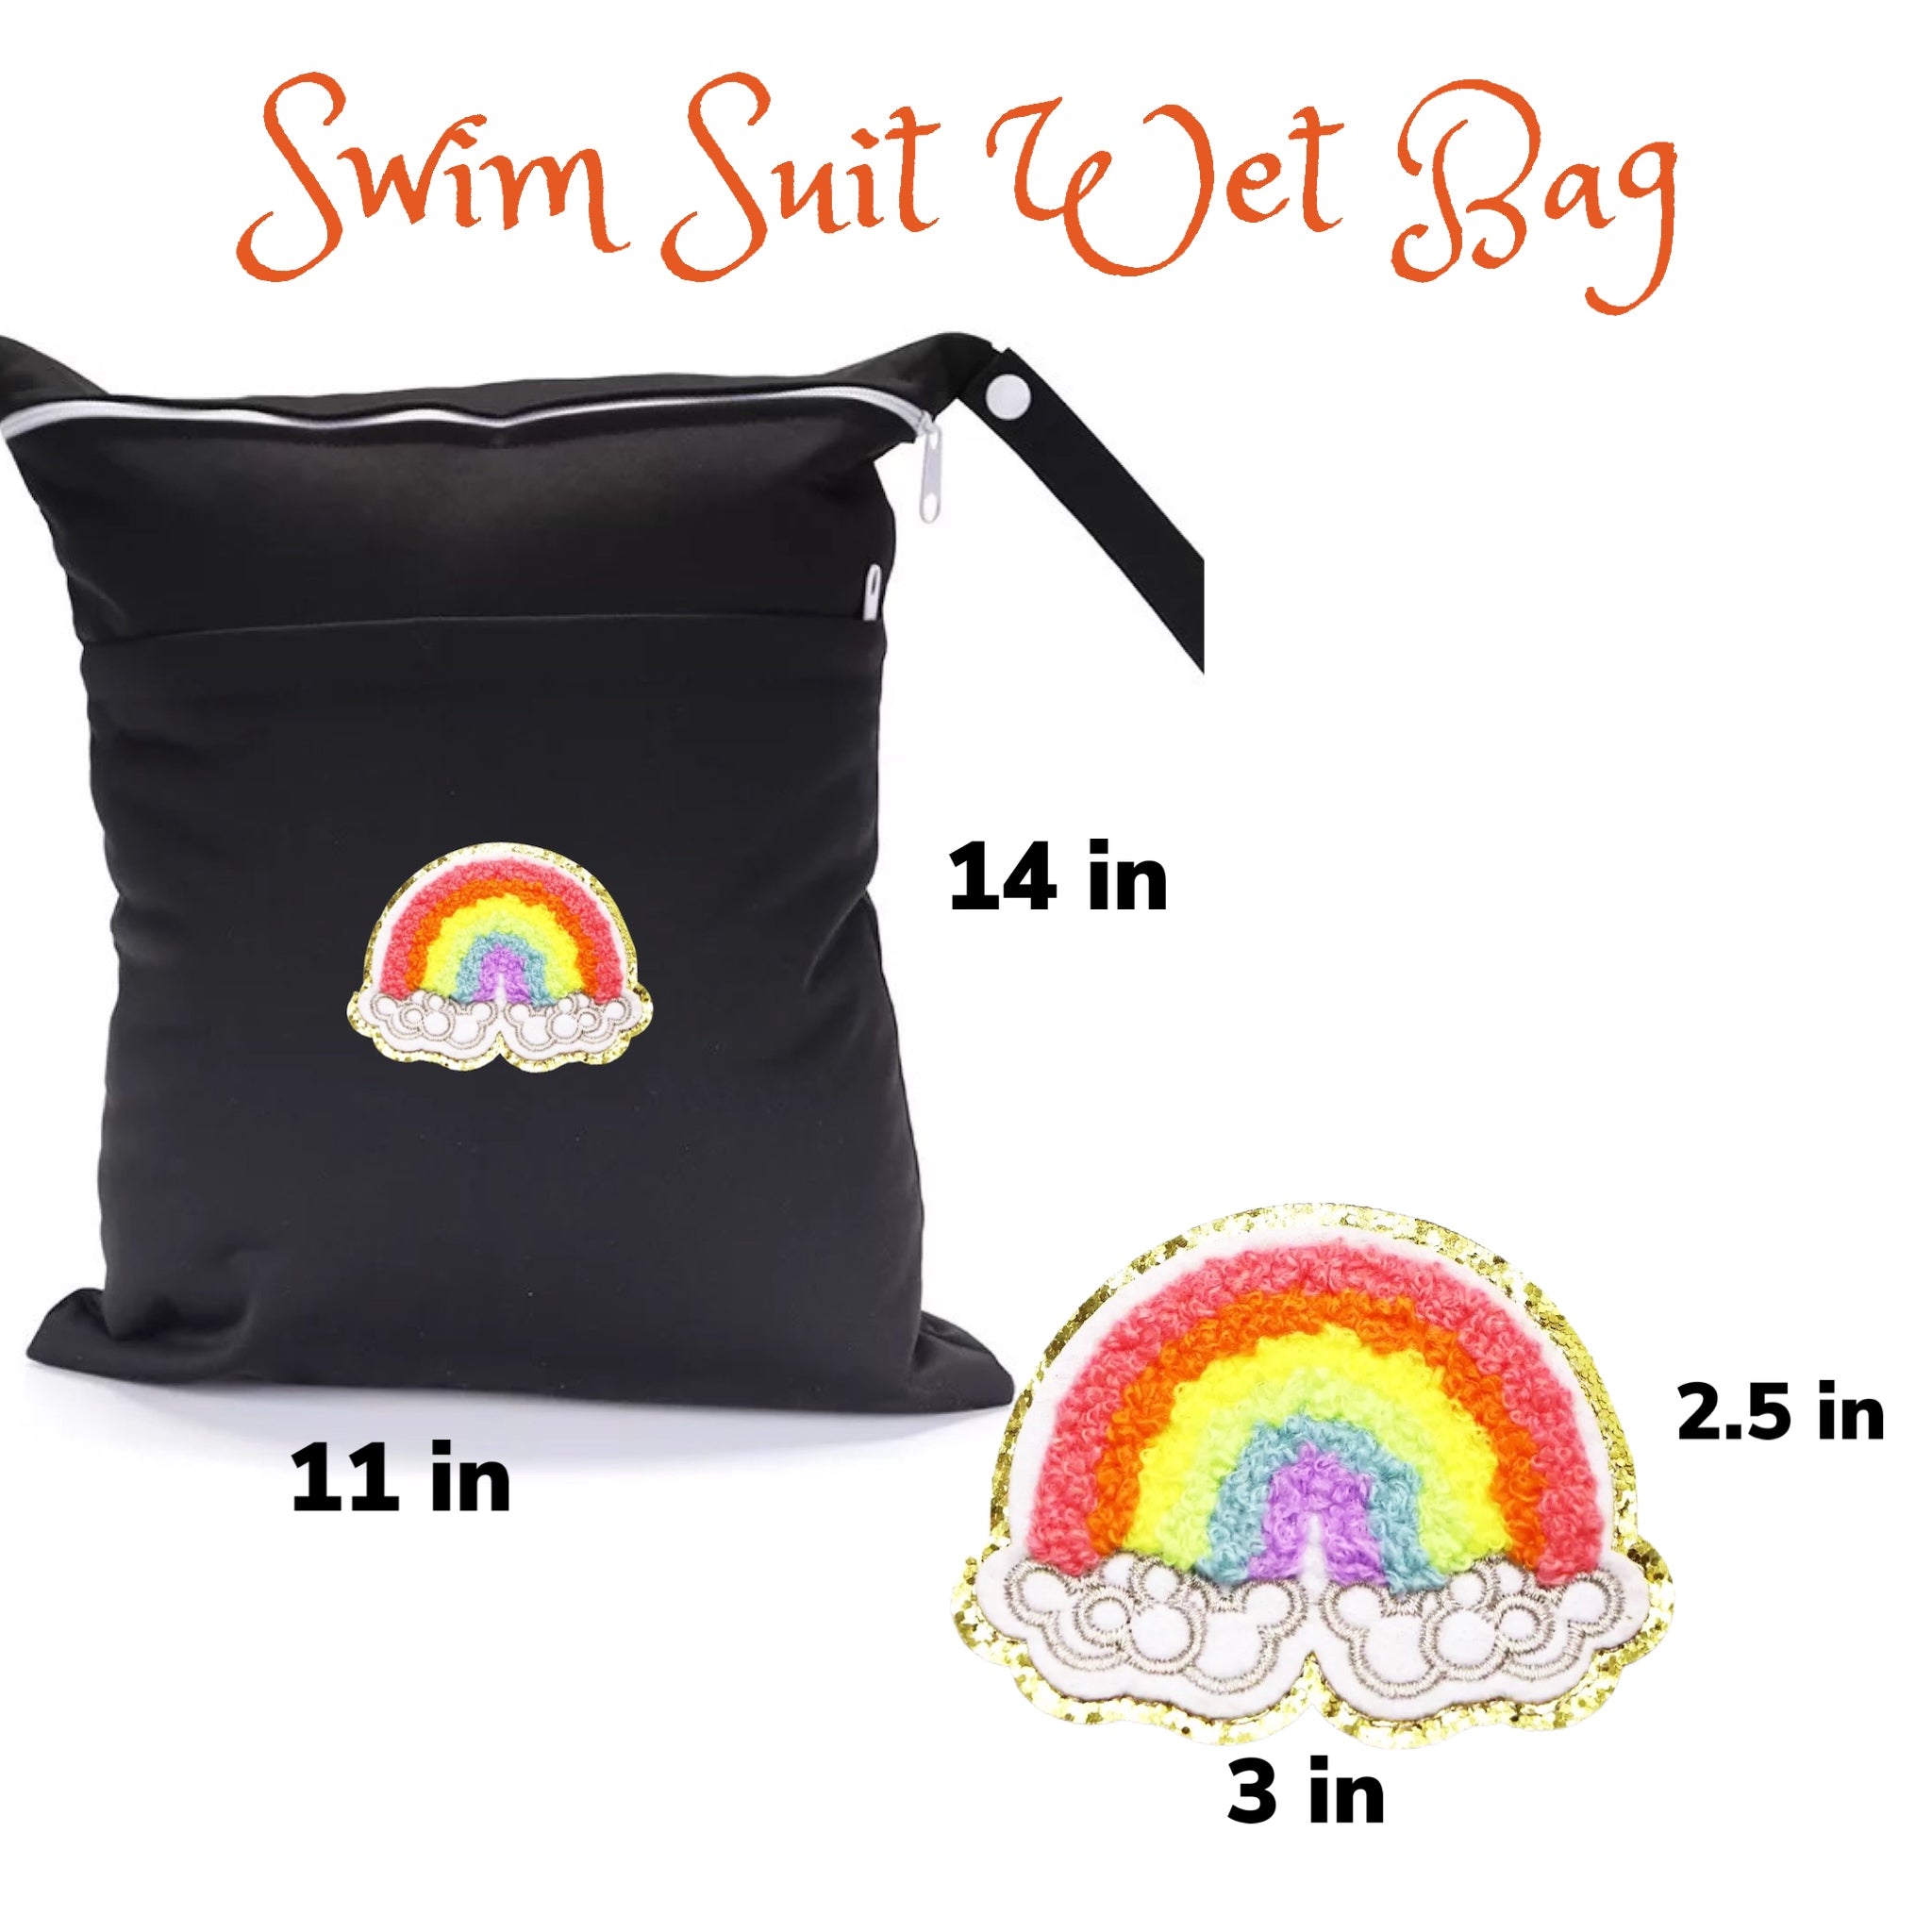 Swim Suit Patch Bag